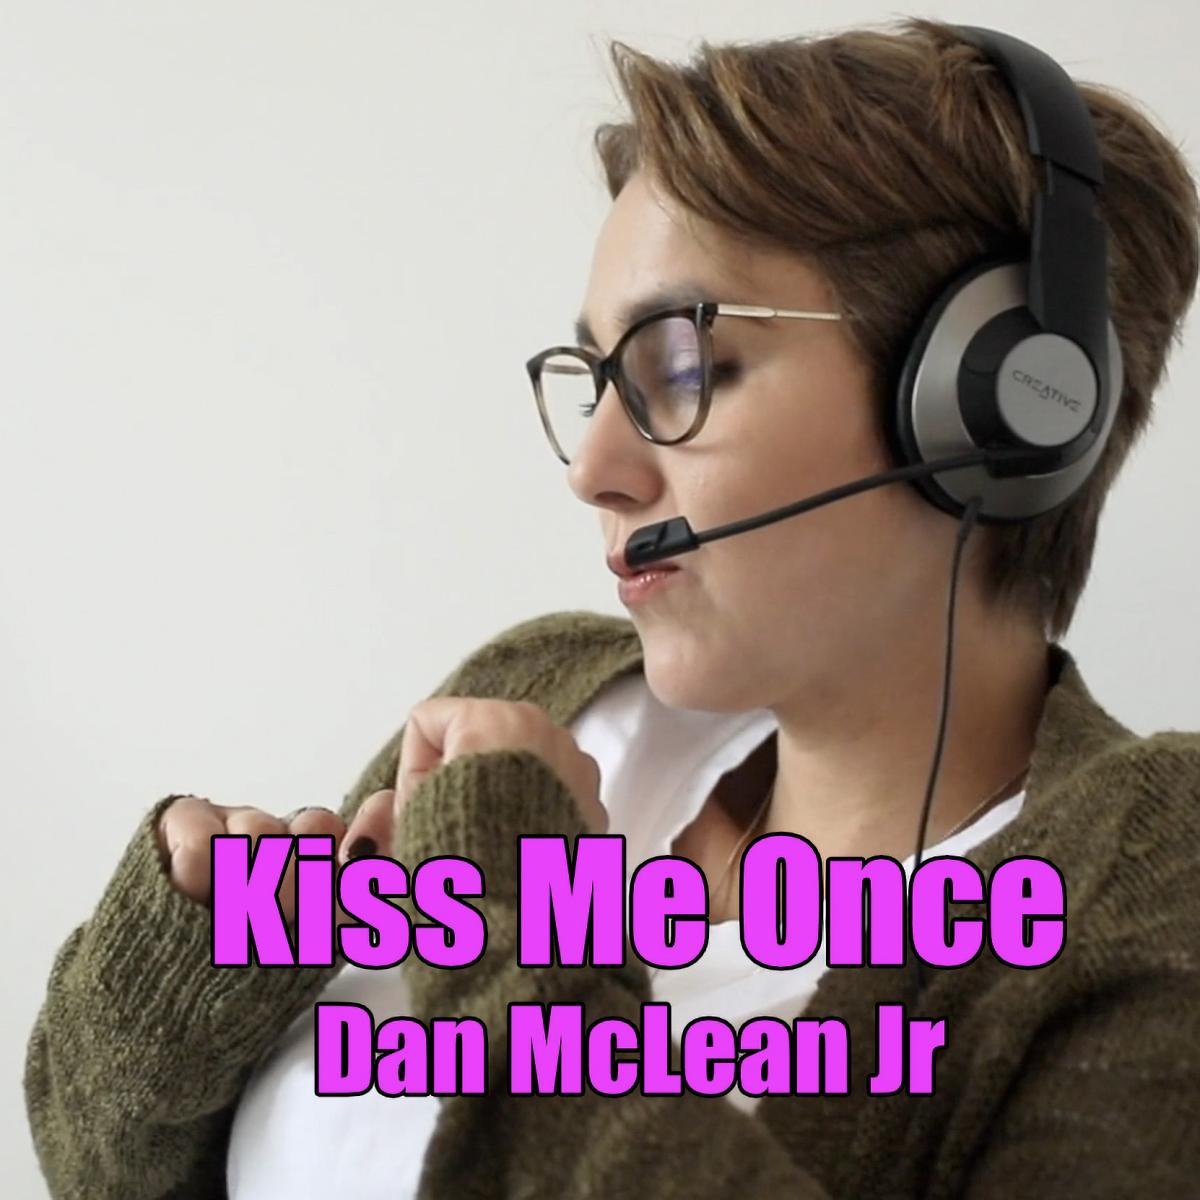 Dan McLean Jr